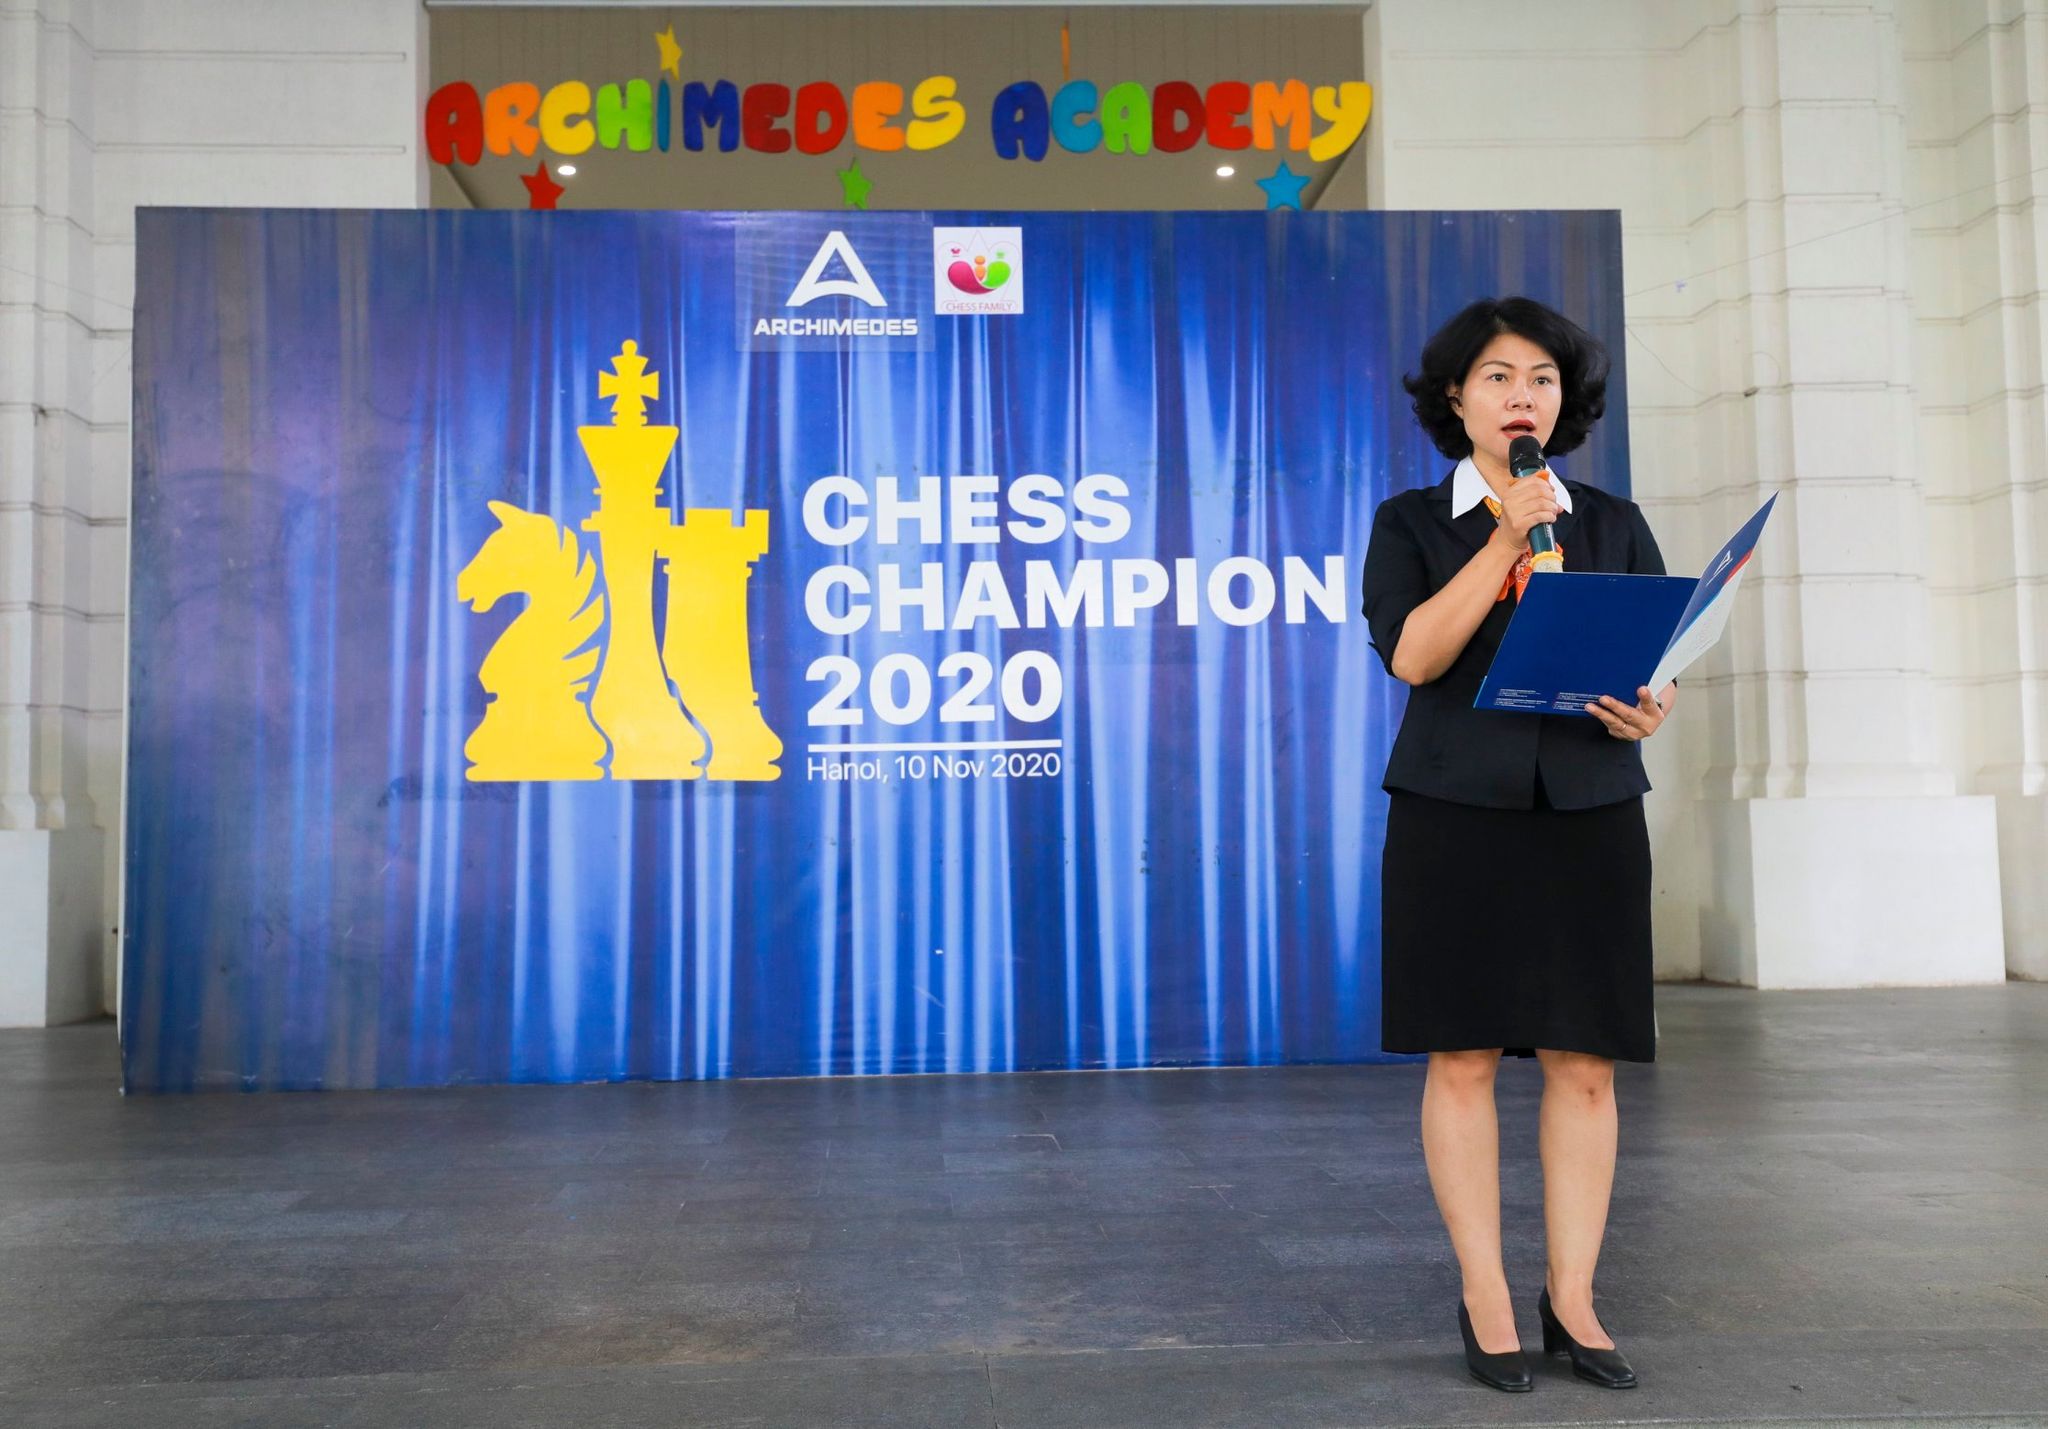 [AAPS] Gần 500 kì thủ nhí tranh tài tại Chess Championship 2020